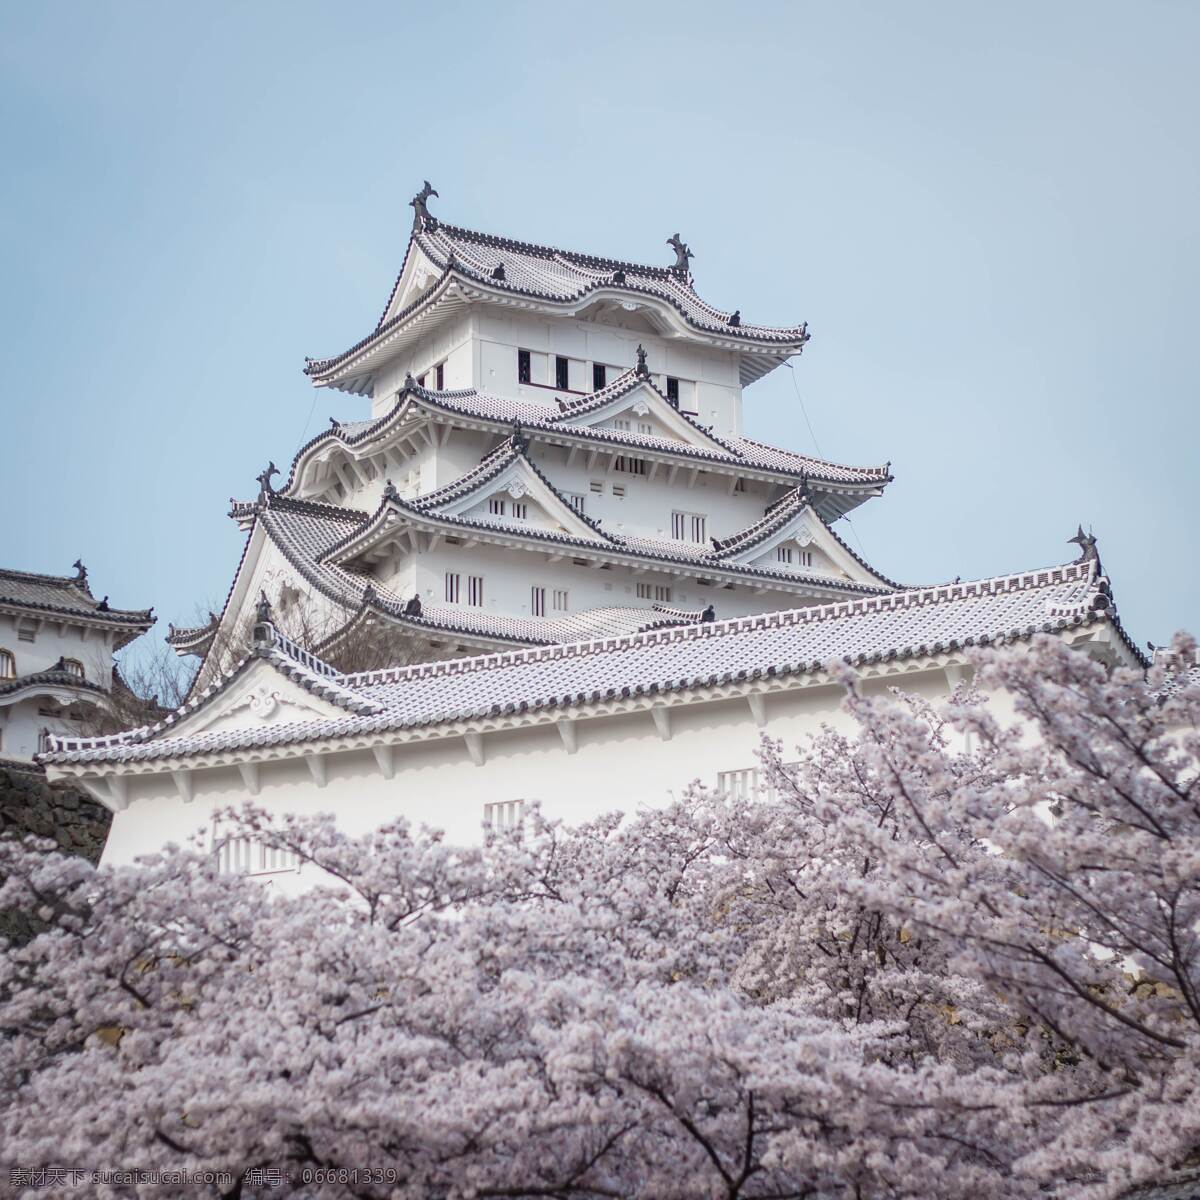 日本皇宫 日本 日本建筑 旅游 游行 古建筑 樱花 自然景观 建筑景观